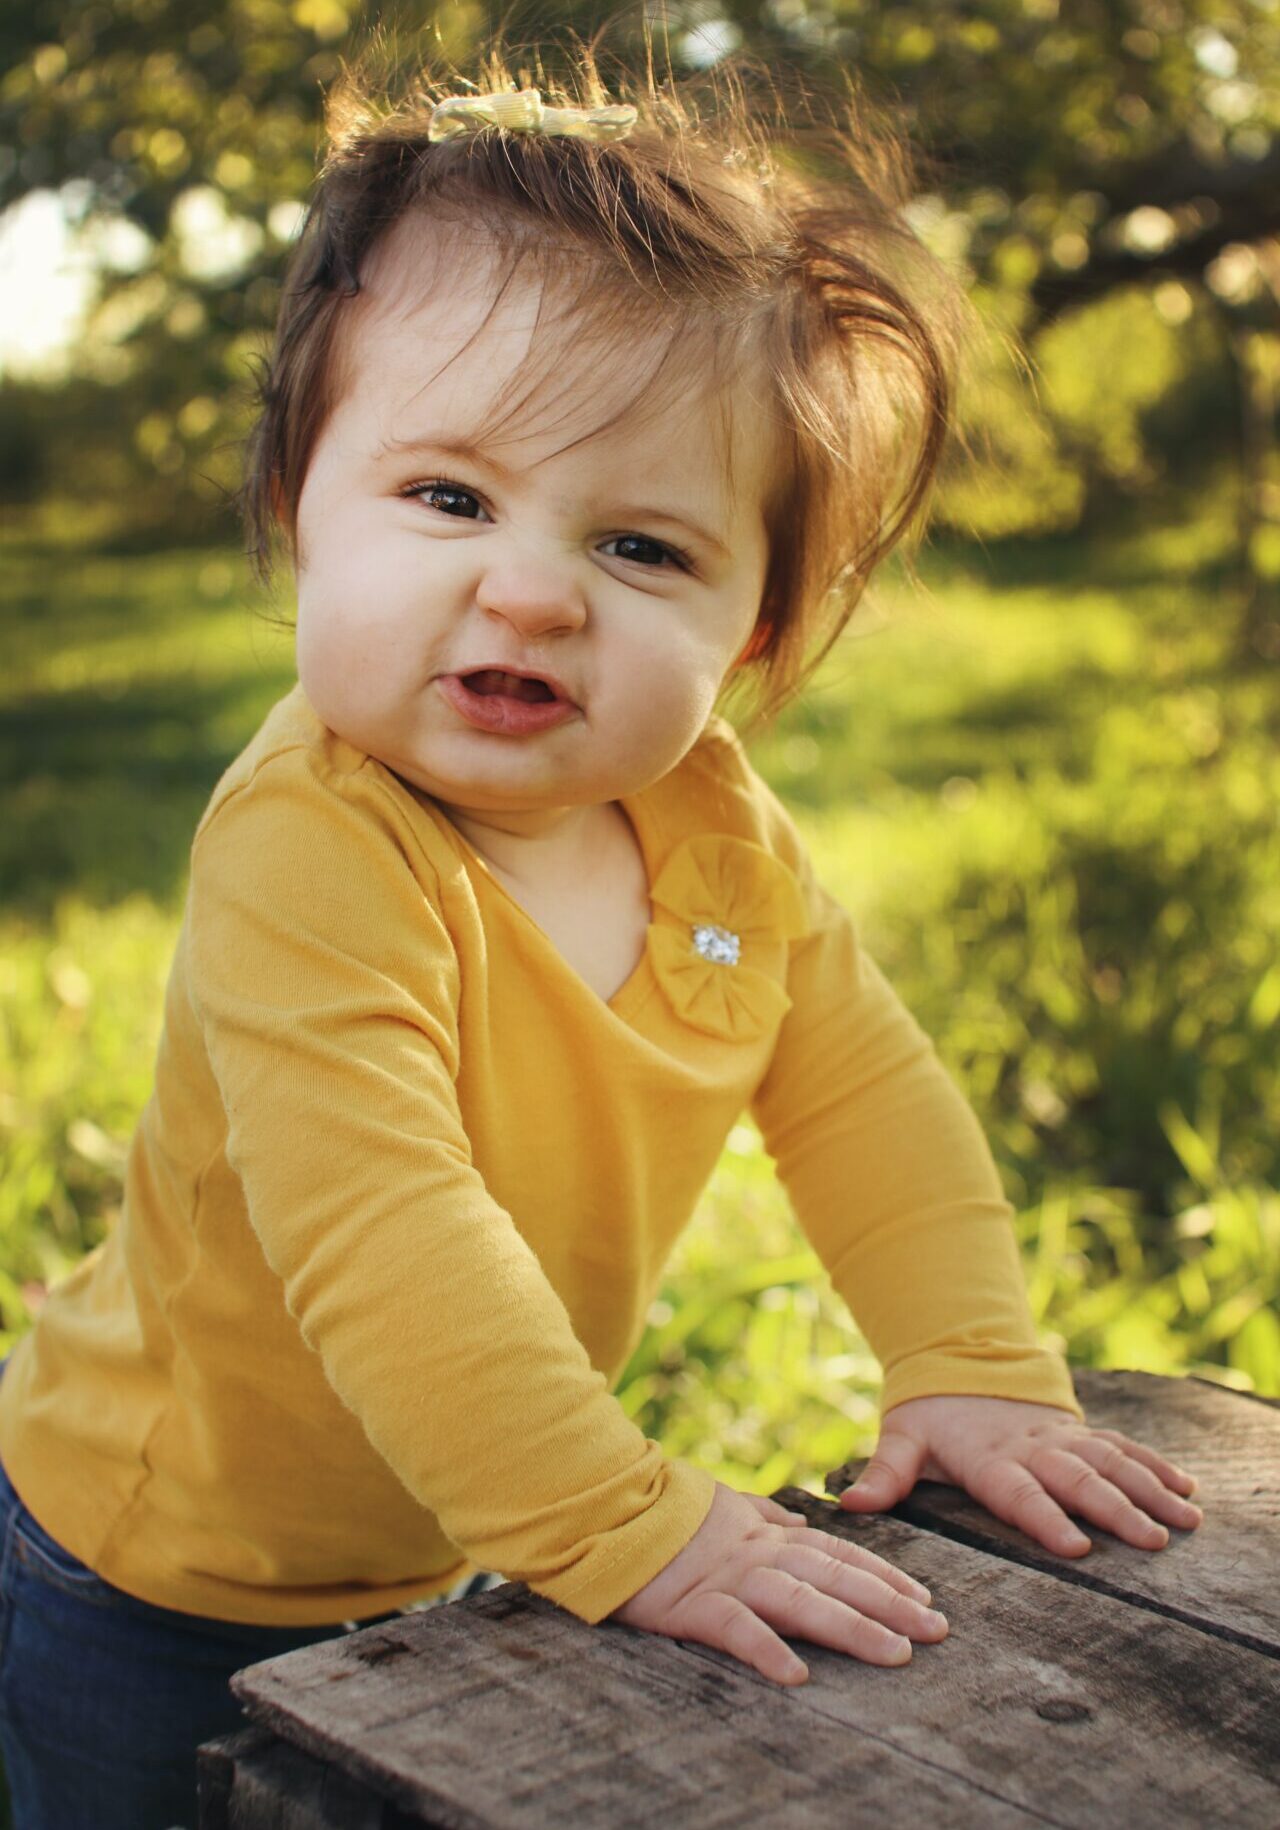 Toddler in Yellow Shirt